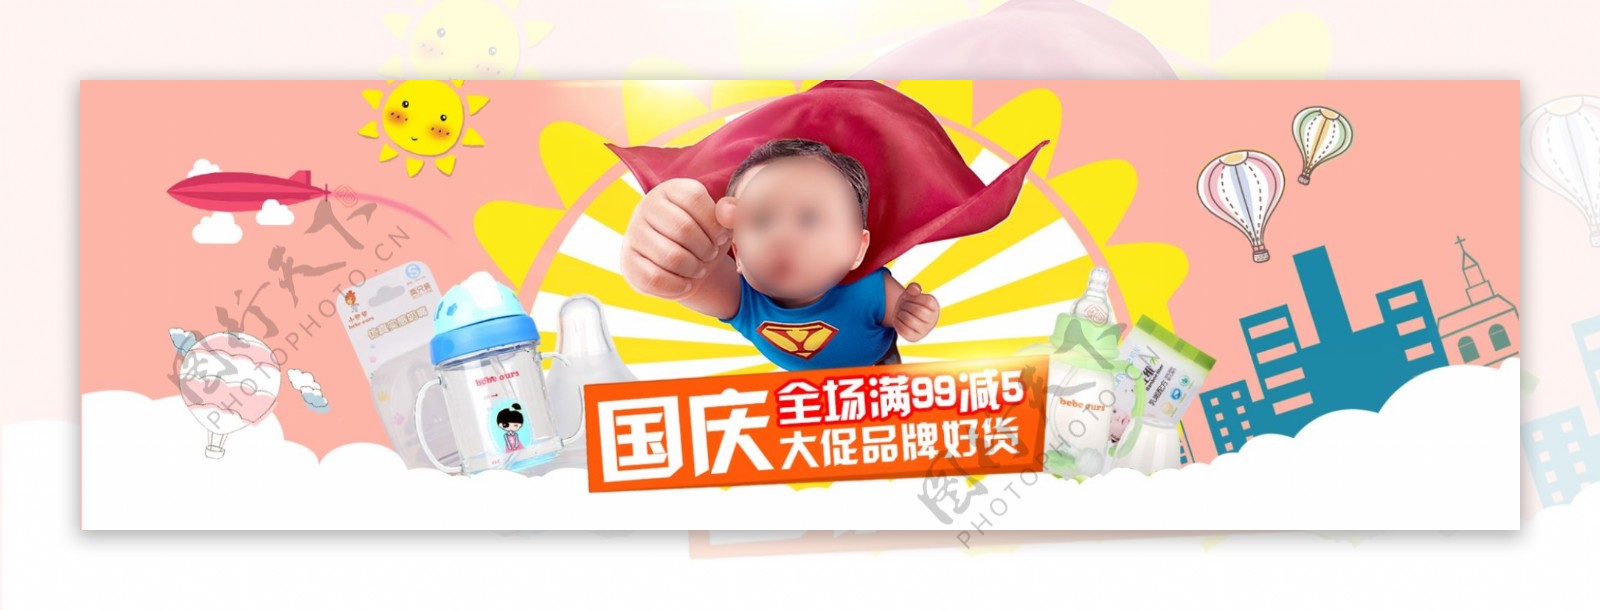 儿童奶瓶促销活动banner